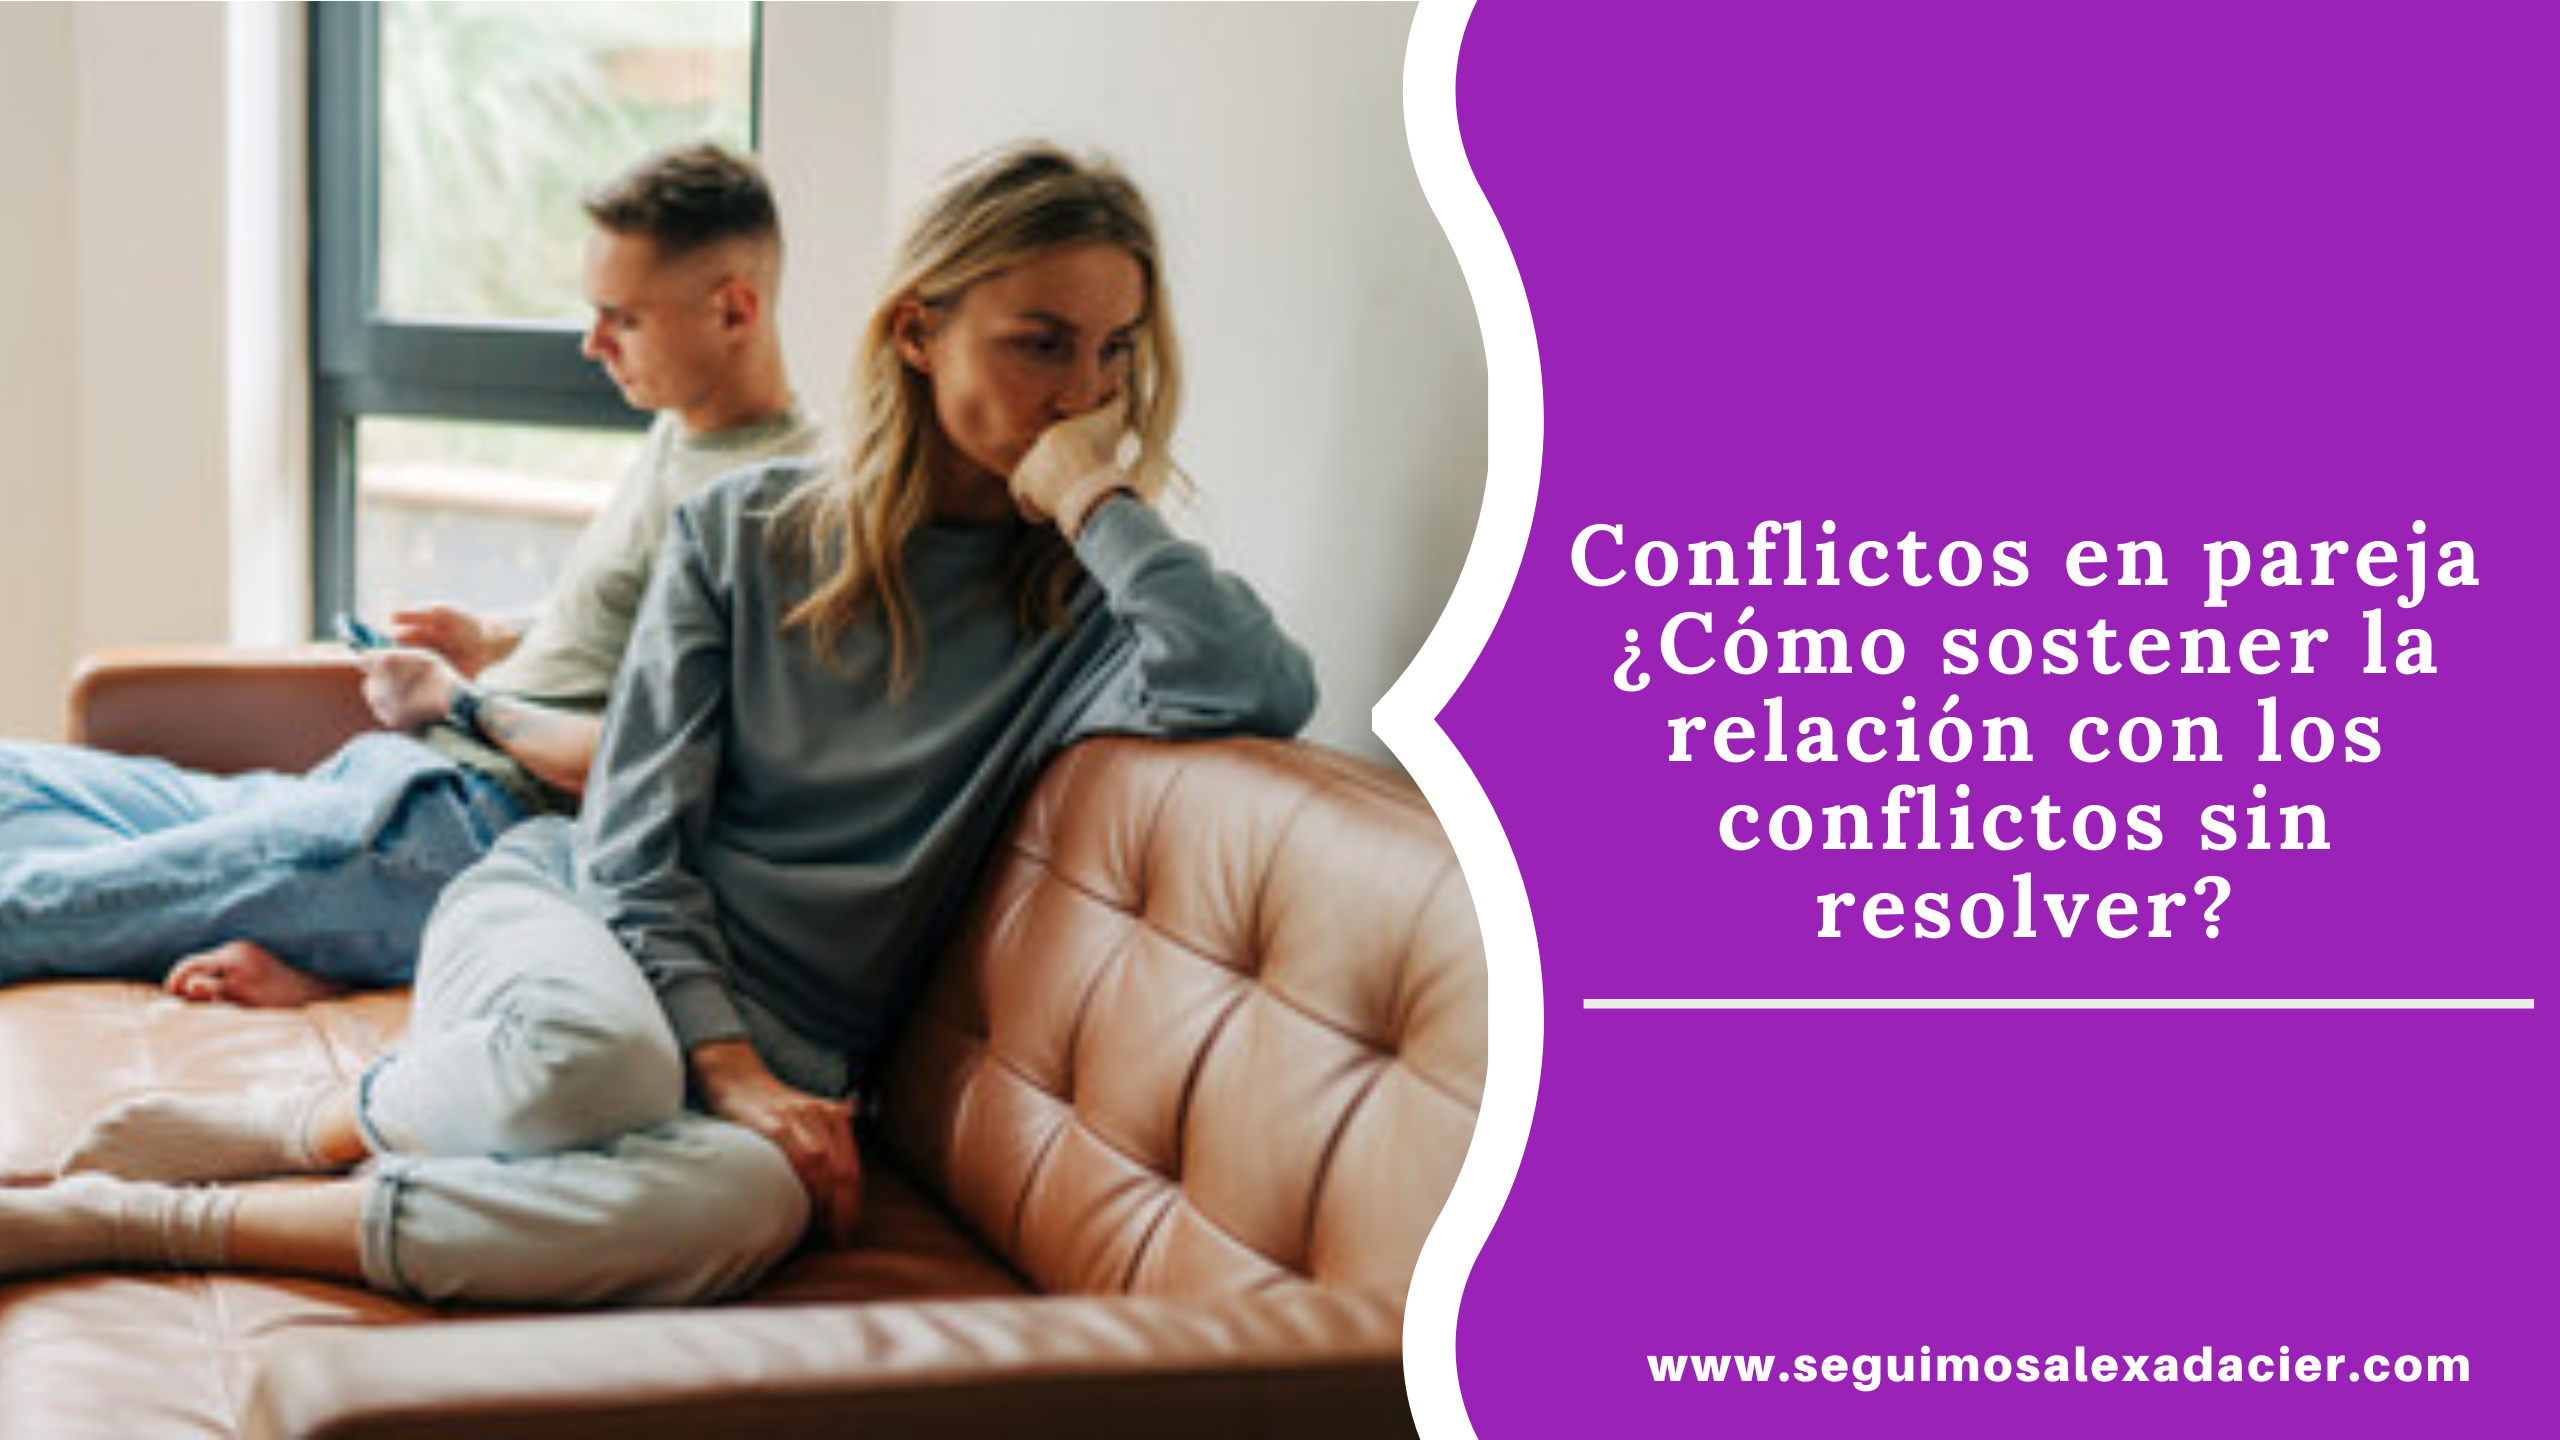 Conflictos en pareja ¿Cómo sostener la relación con los conflictos sin resolver?